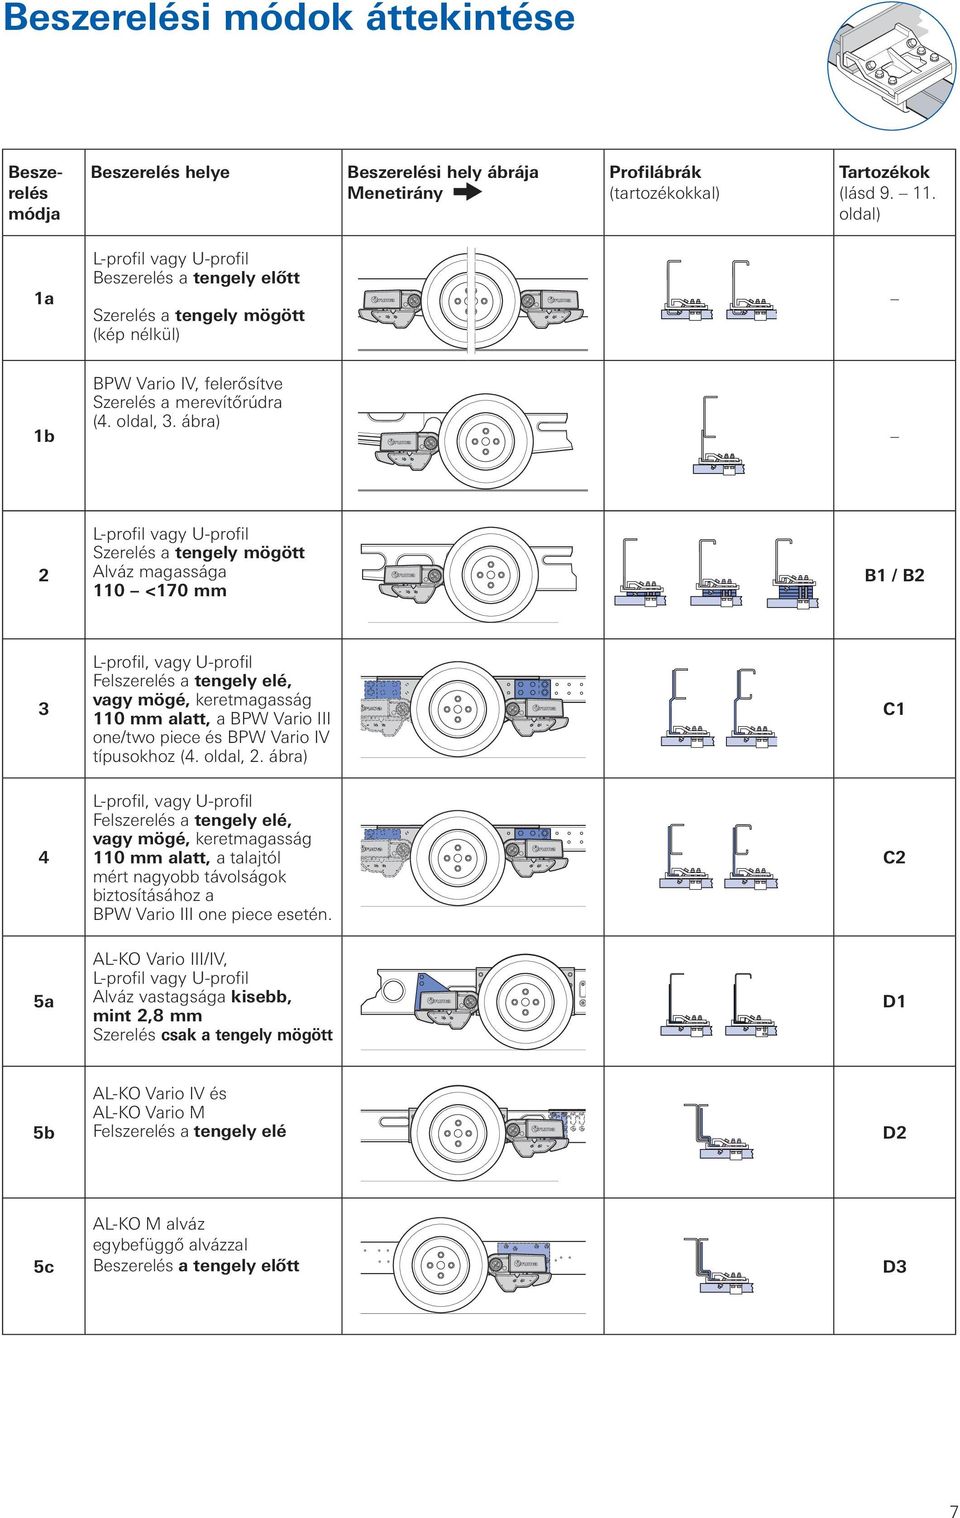 ábra) 2 Szerelés a tengely mögött Alváz magassága 110 <170 mm B1 / B2 3 L-profil, vagy U-profil Felszerelés a tengely elé, vagy mögé, keretmagasság 110 mm alatt, a BPW Vario III one/two piece és BPW